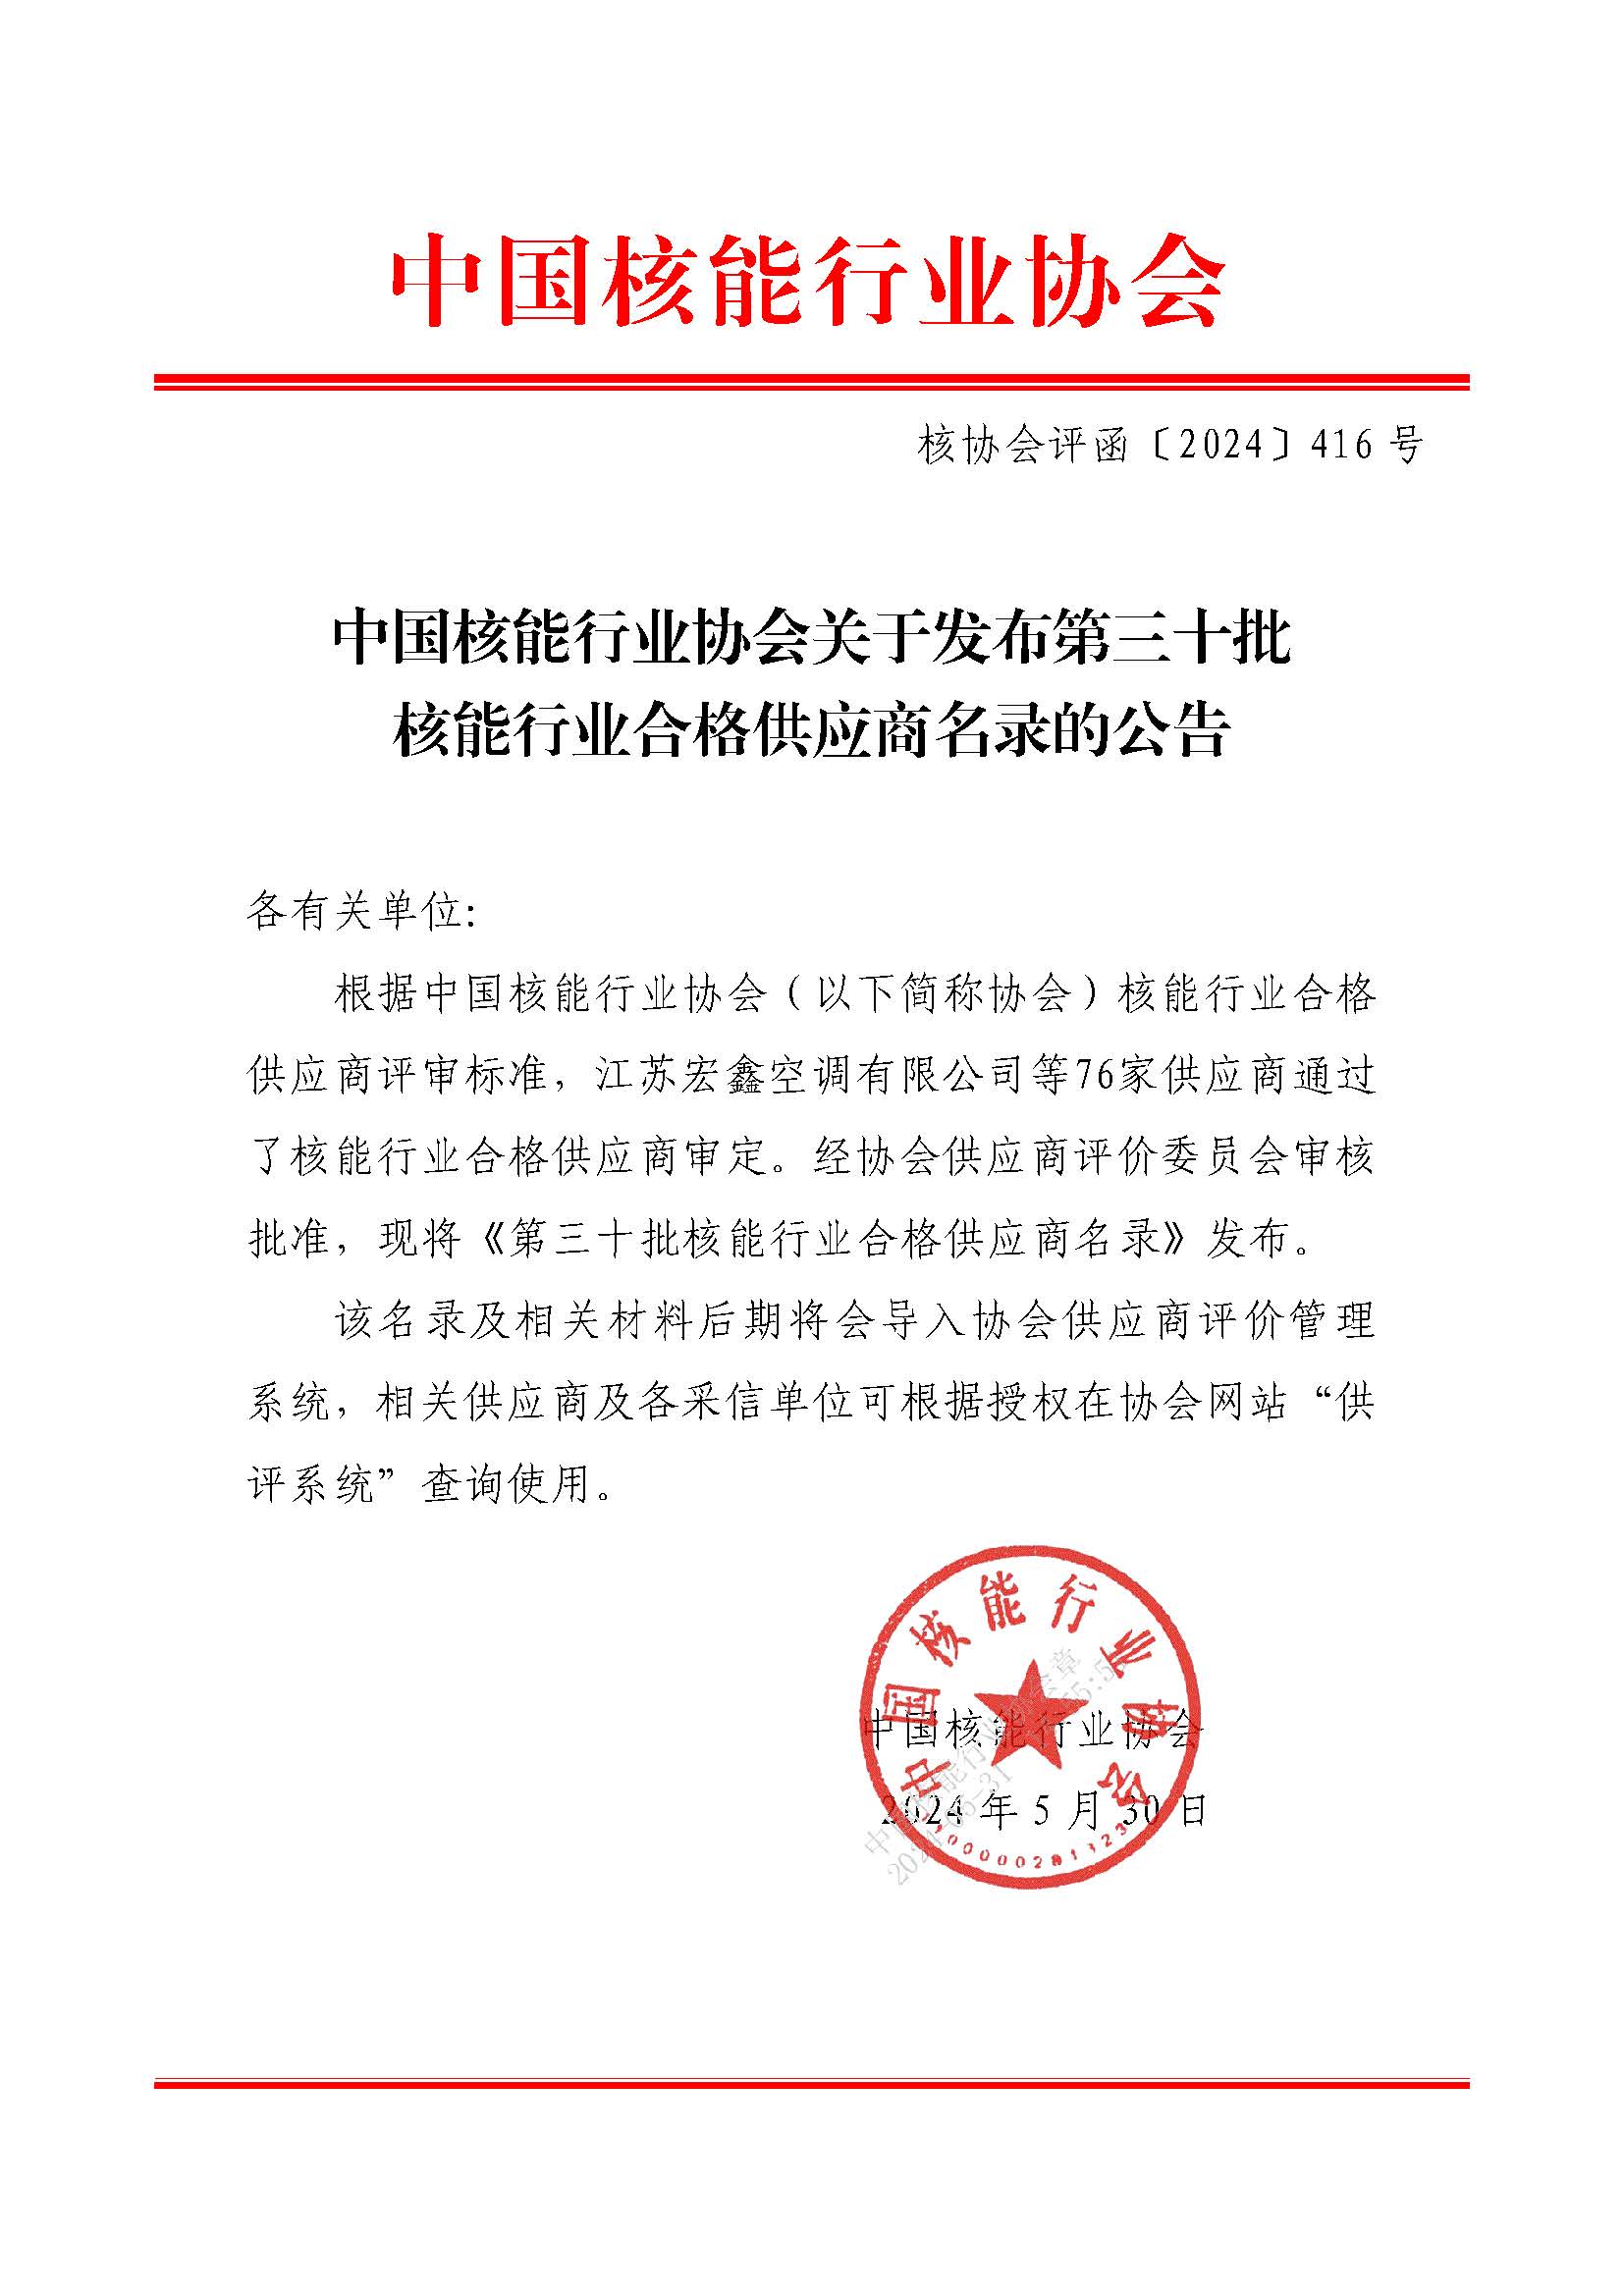 中国核能行业协会关于发布第三十批核能行业合格供应商名录的公告_页面_1.jpg